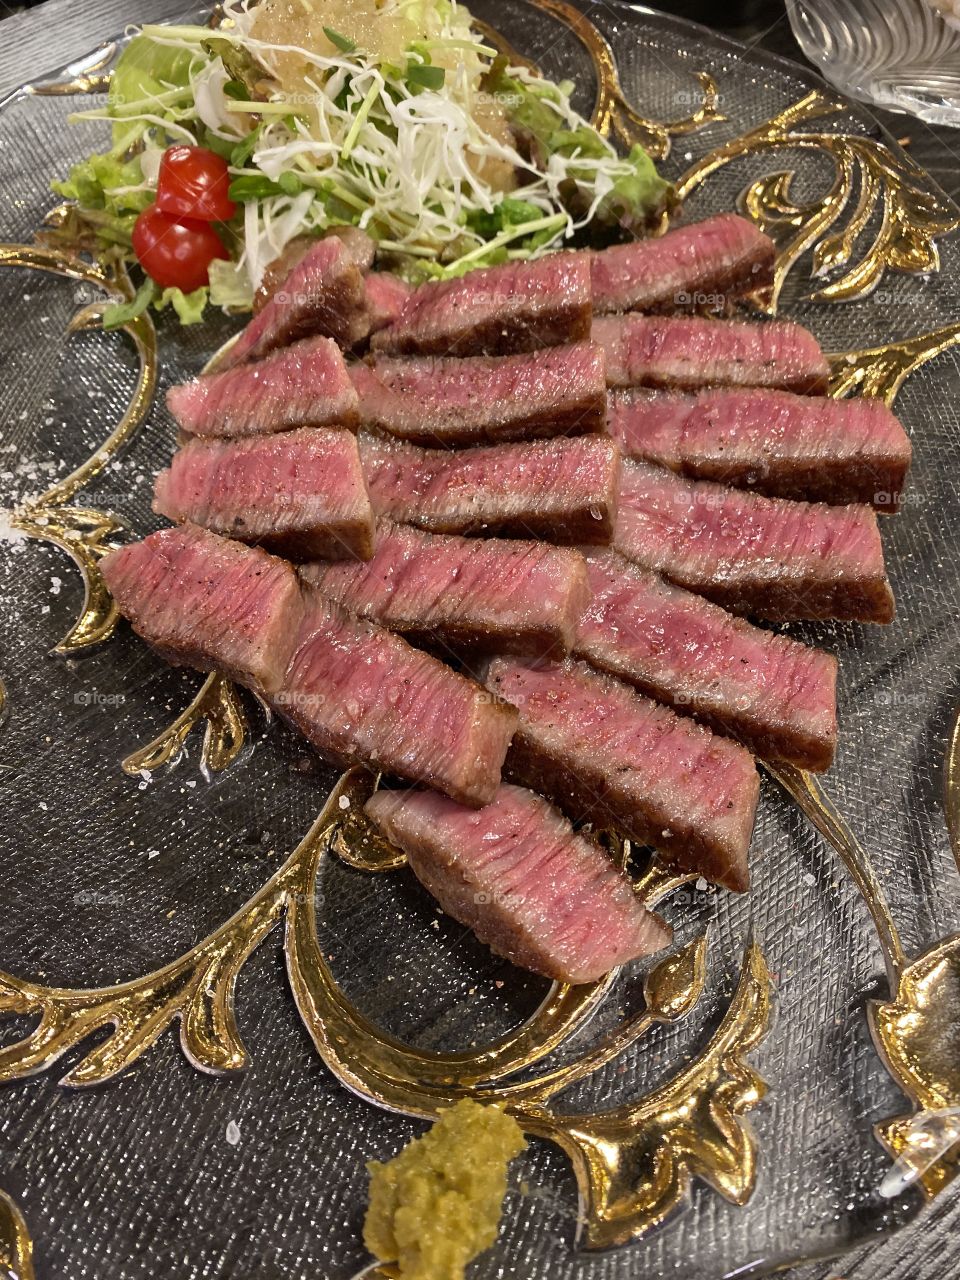 Ishigaki beef